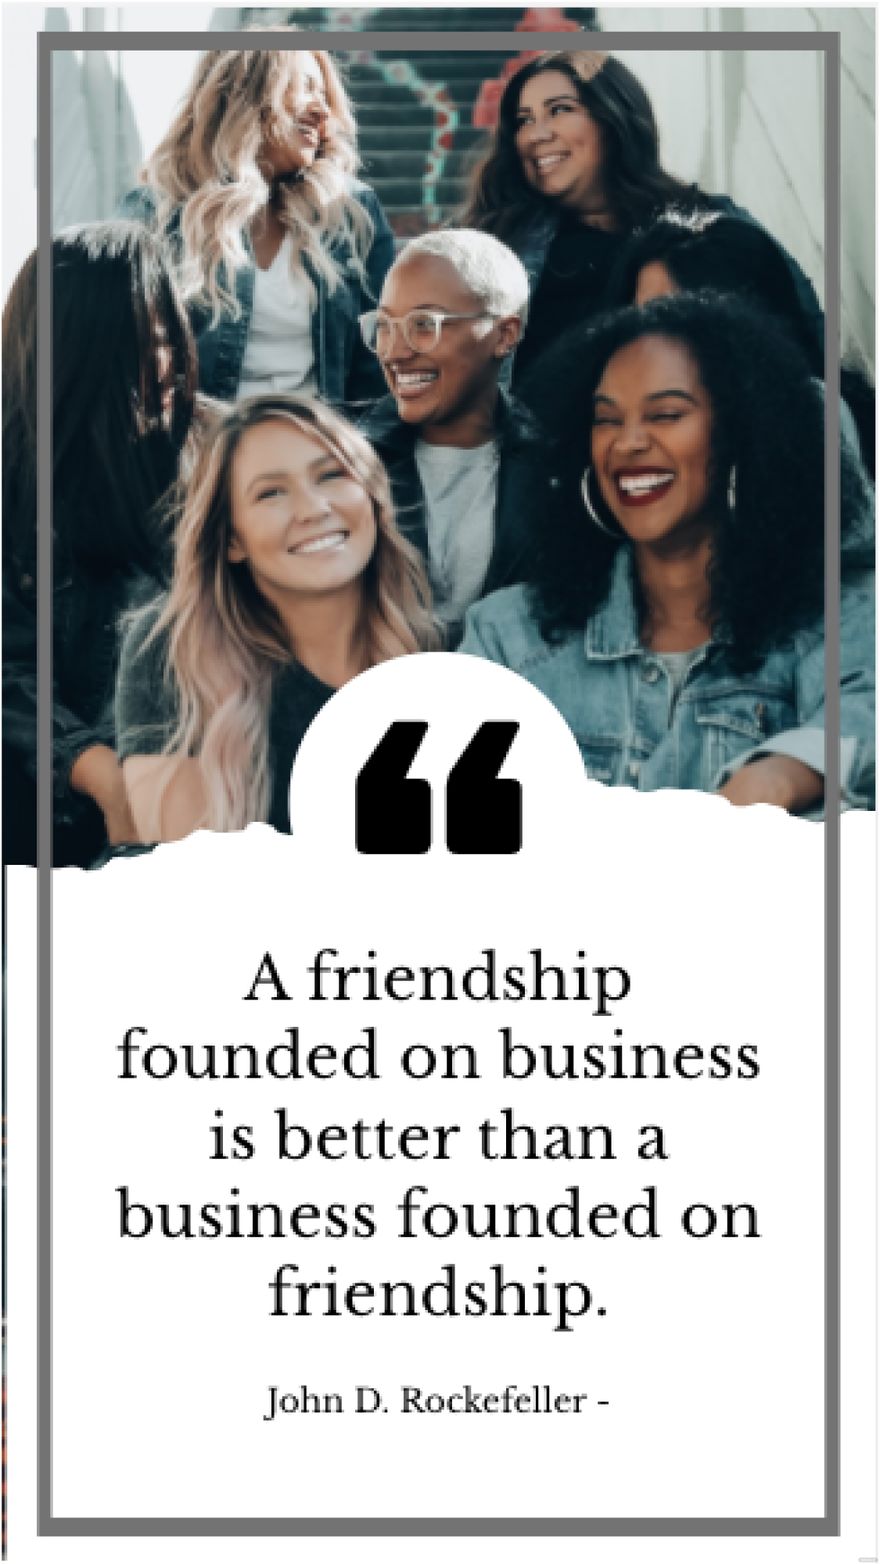 John D. Rockefeller - A friendship founded on business is better than a business founded on friendship.